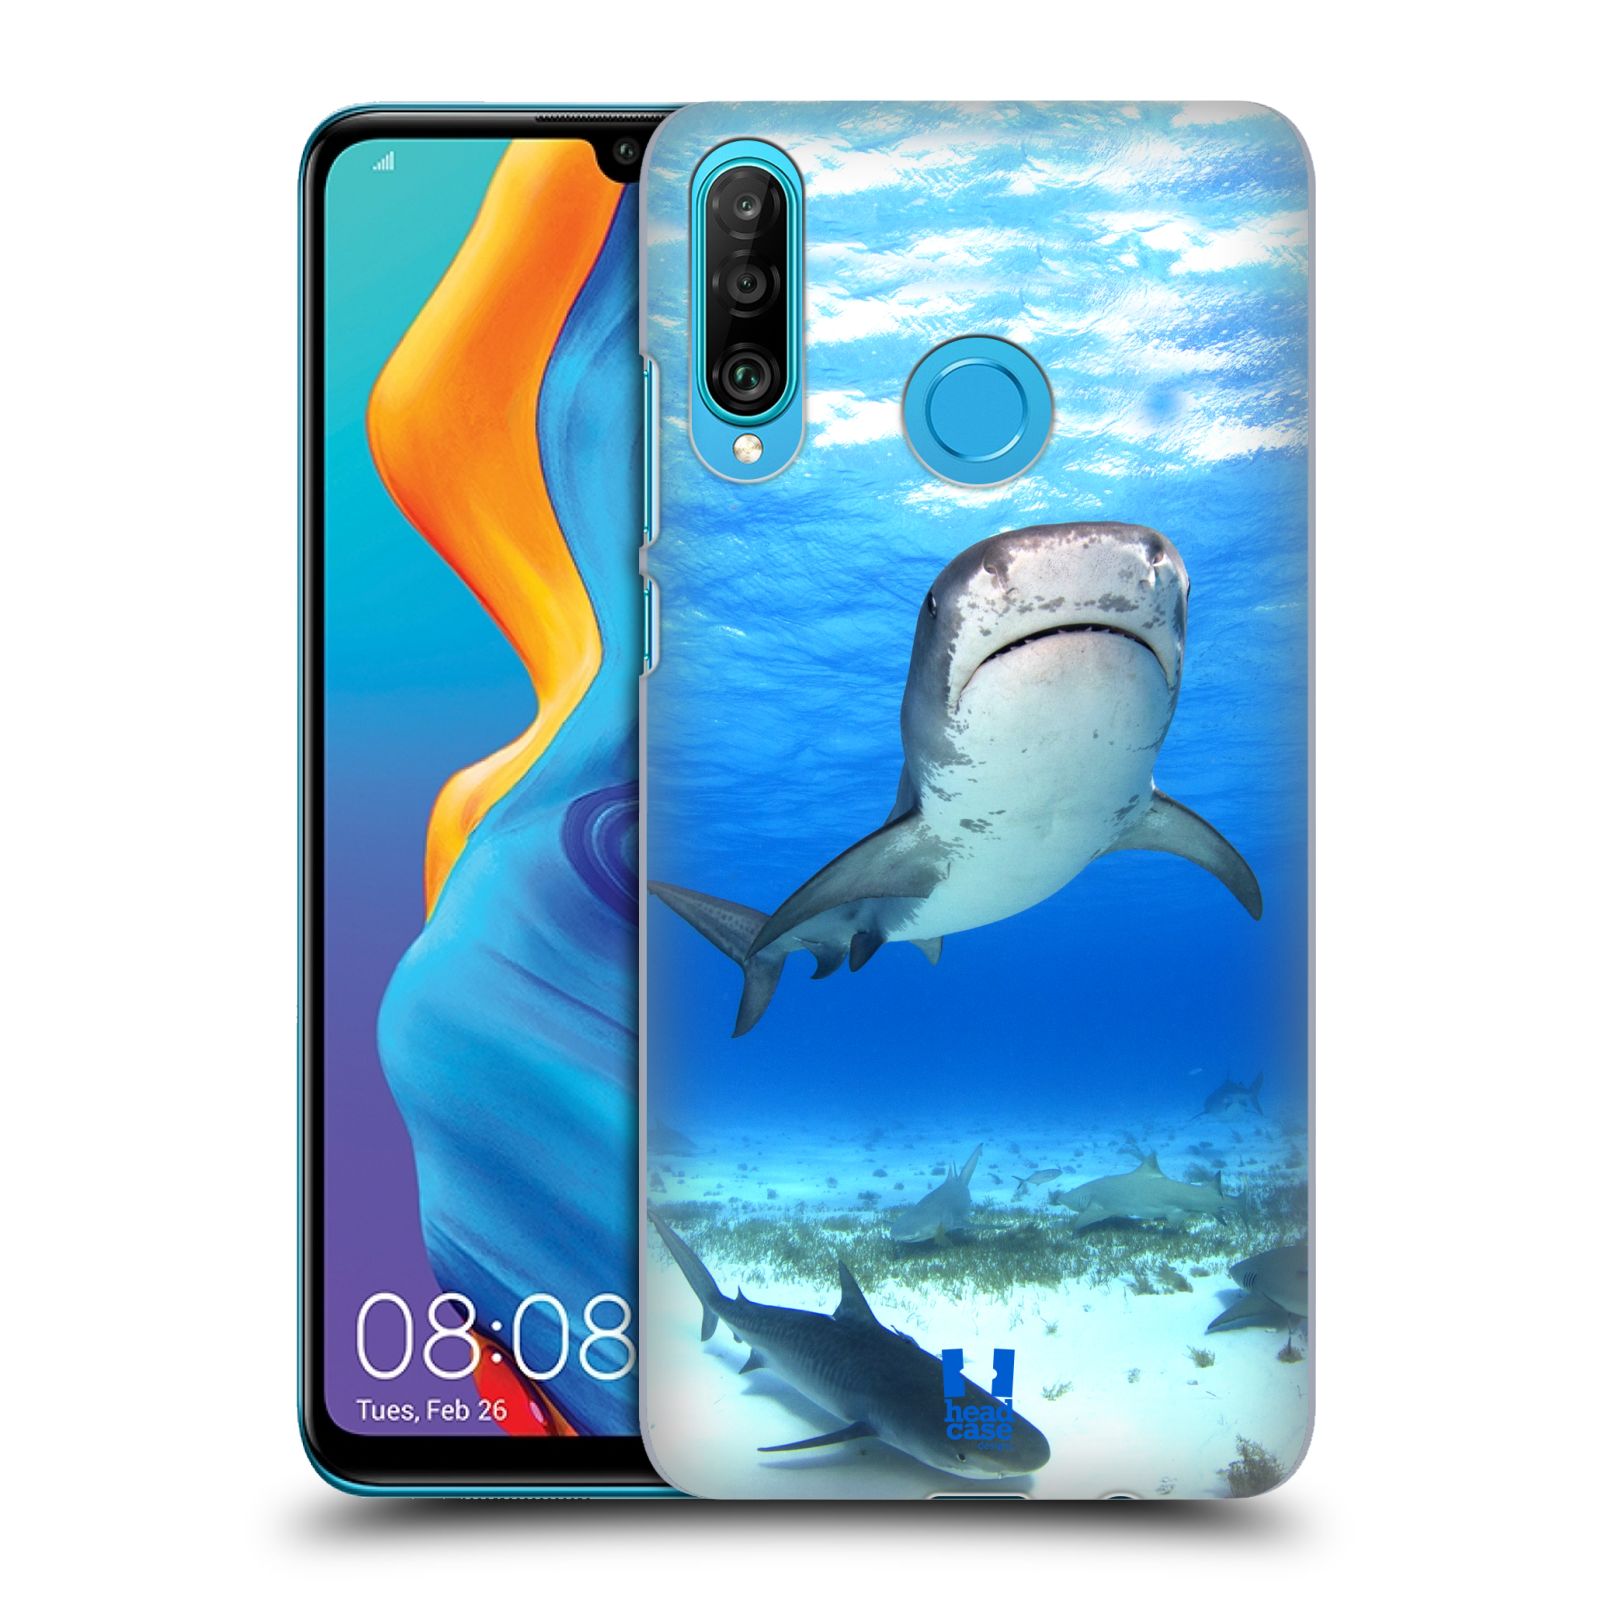 Pouzdro na mobil Huawei P30 LITE - HEAD CASE - vzor slavná zvířata foto žralok tygří